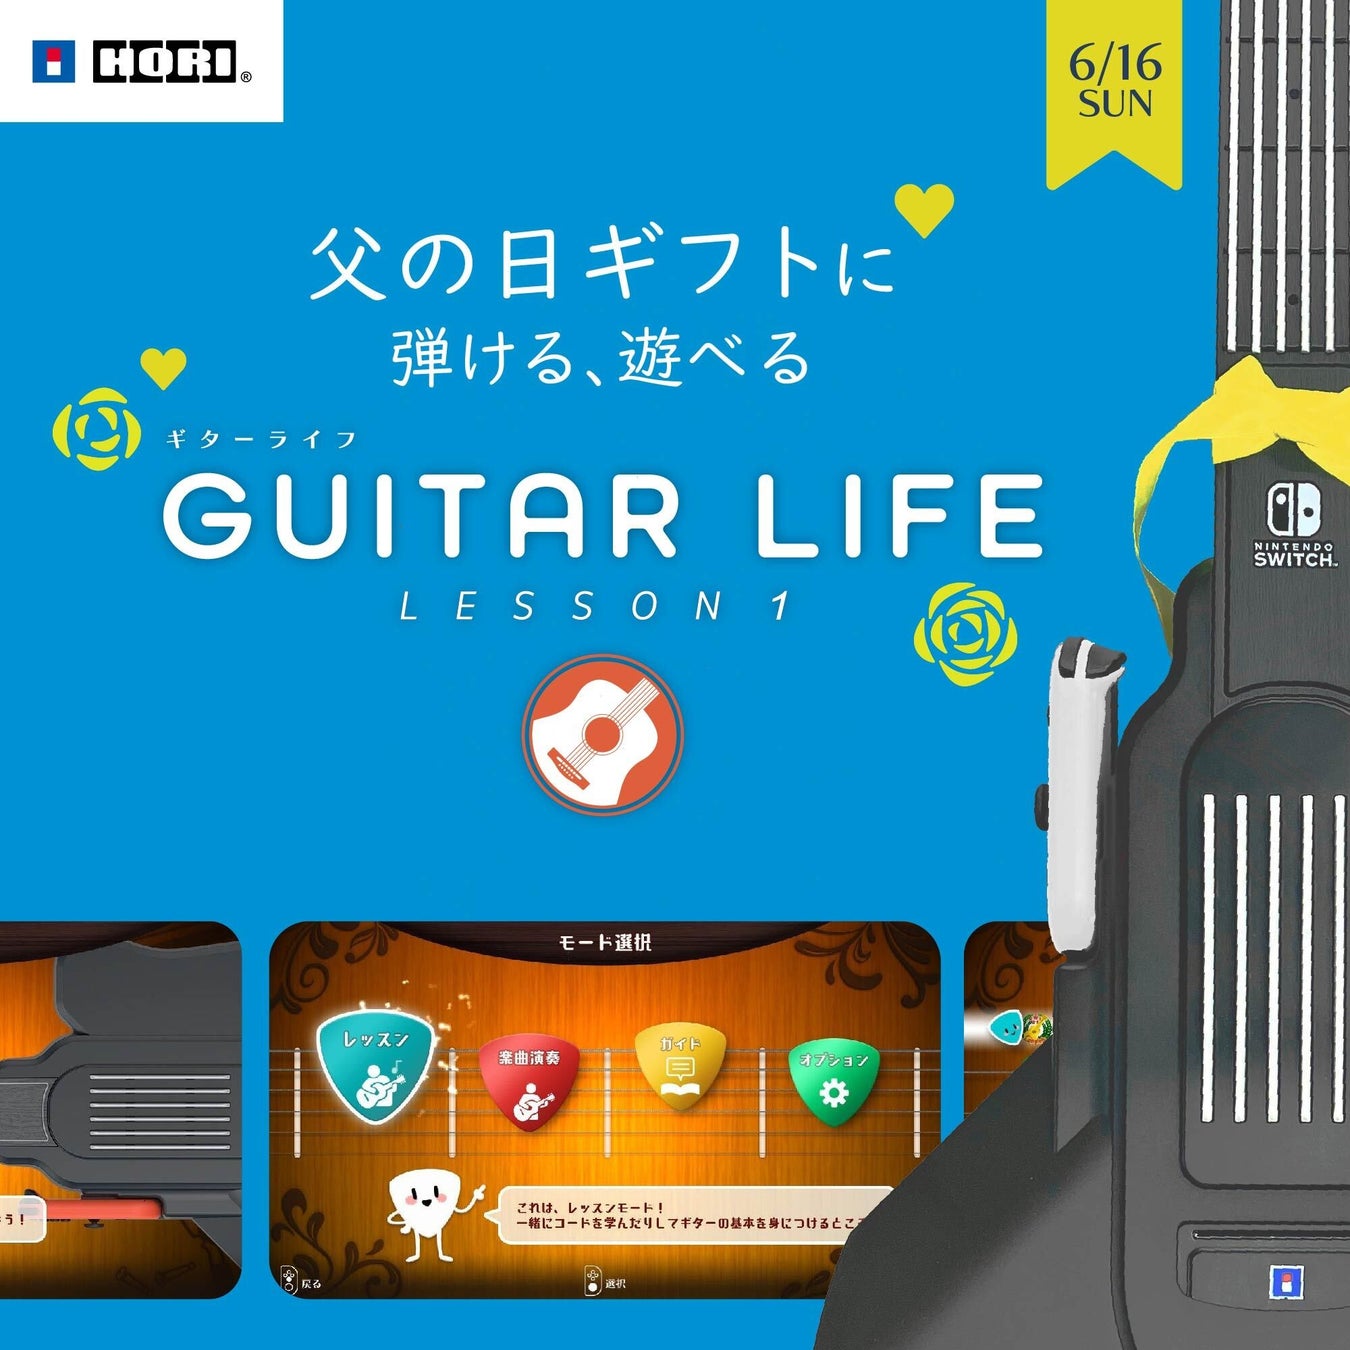 enish、モバイルゲームクオリティのブロックチェーンゲーム『De:Lithe Last Memories』、柘榴-zakuro- さんが歌唱を担当するキャラクターソングMVを公開！